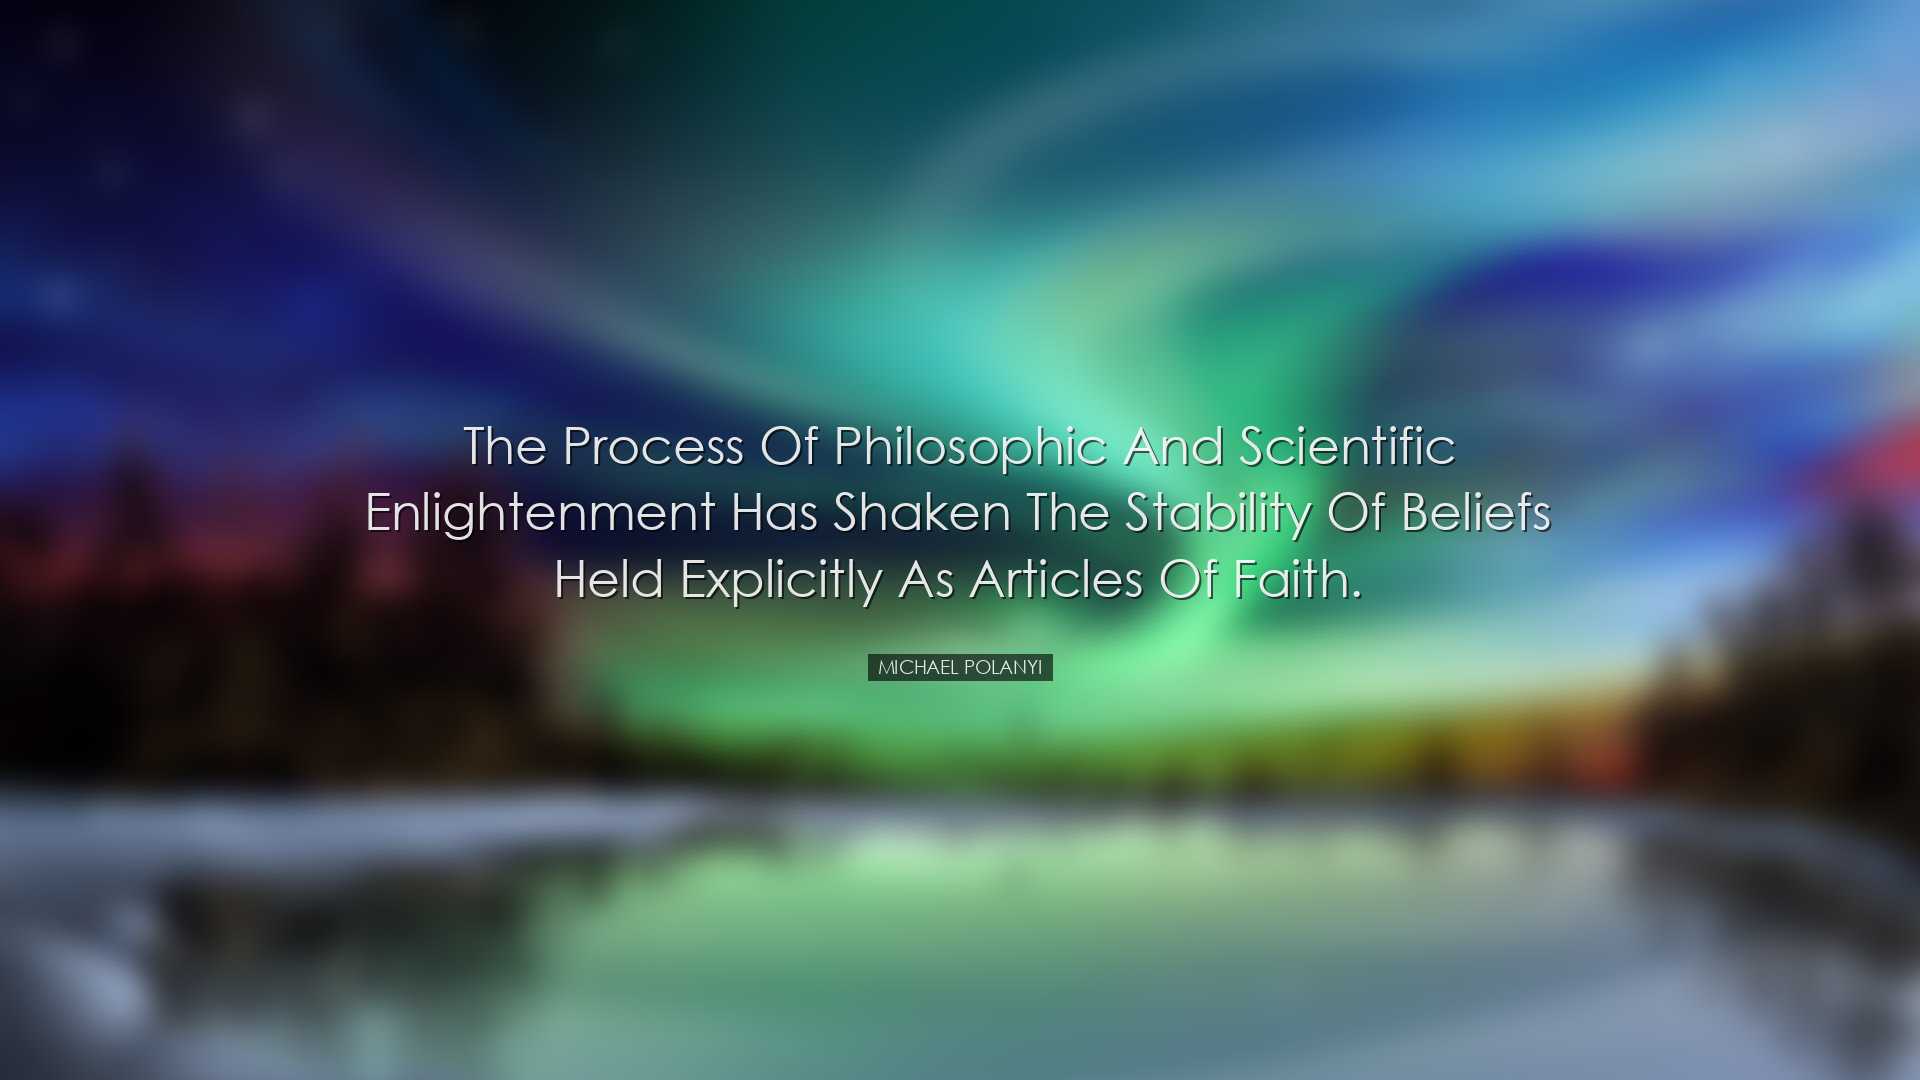 The process of philosophic and scientific enlightenment has shaken